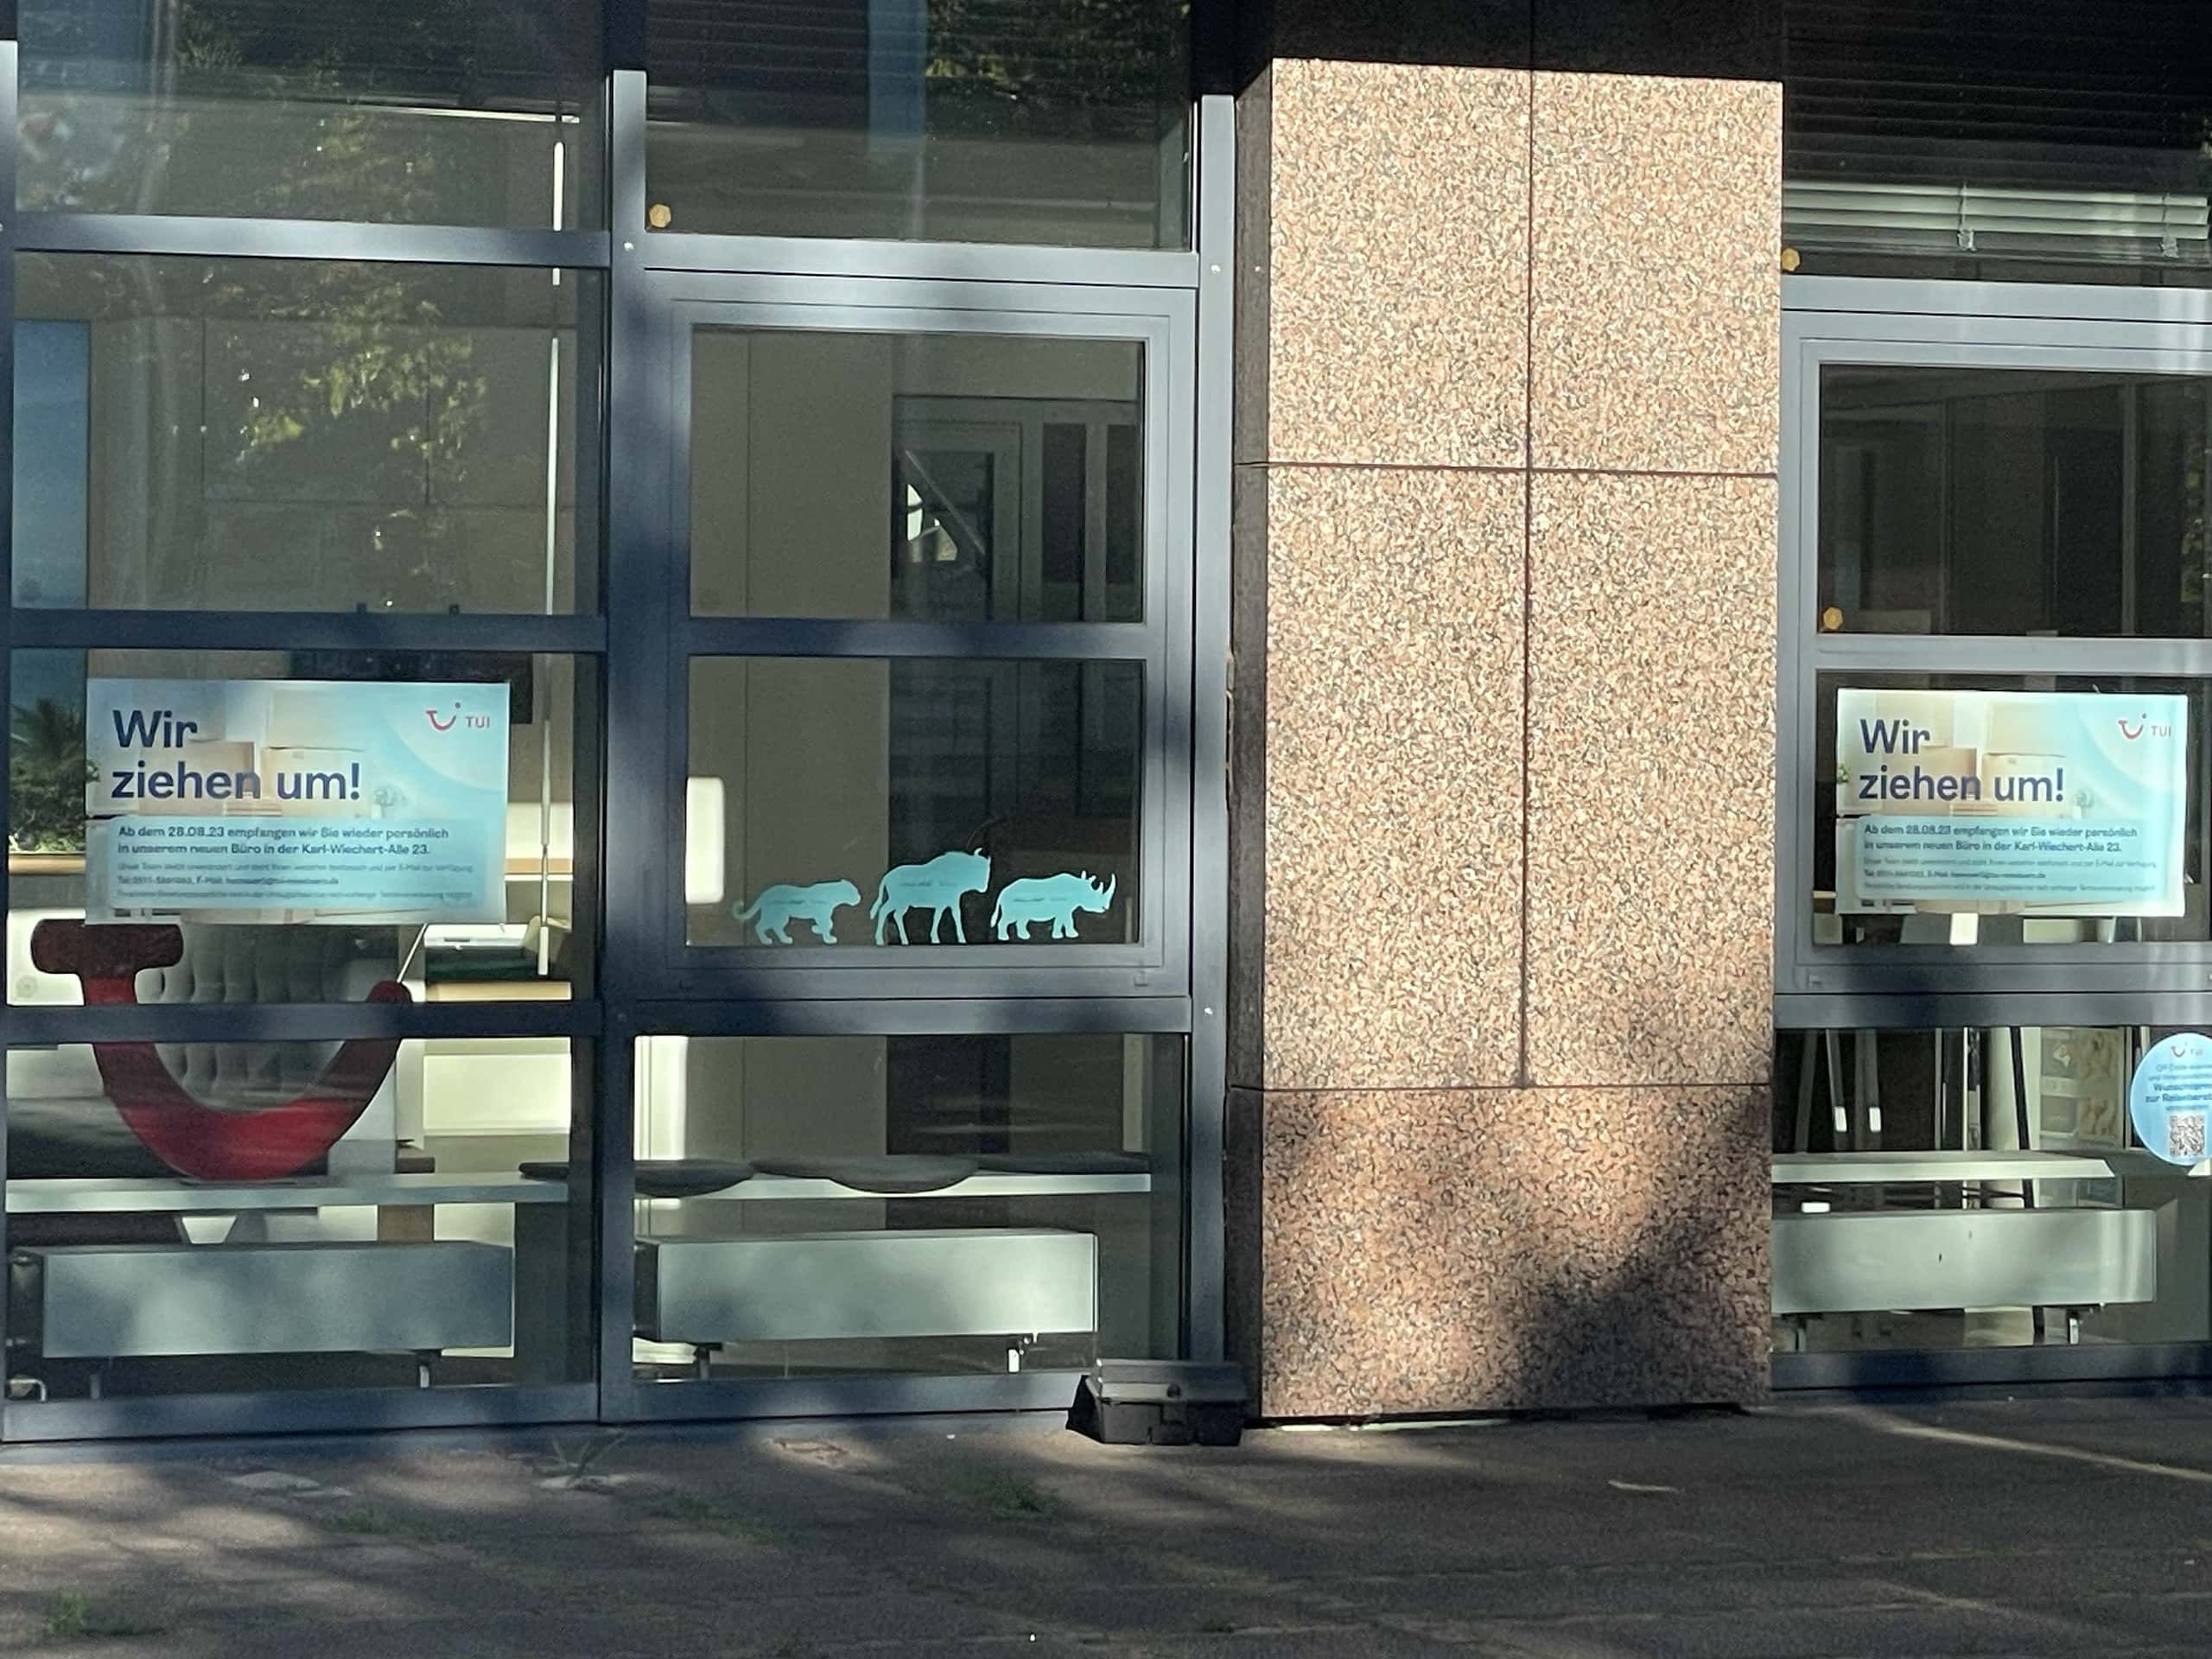 Eingangsbereich der TUI AG mit Wir-sind-umgezogen-Schildern an den Türen.